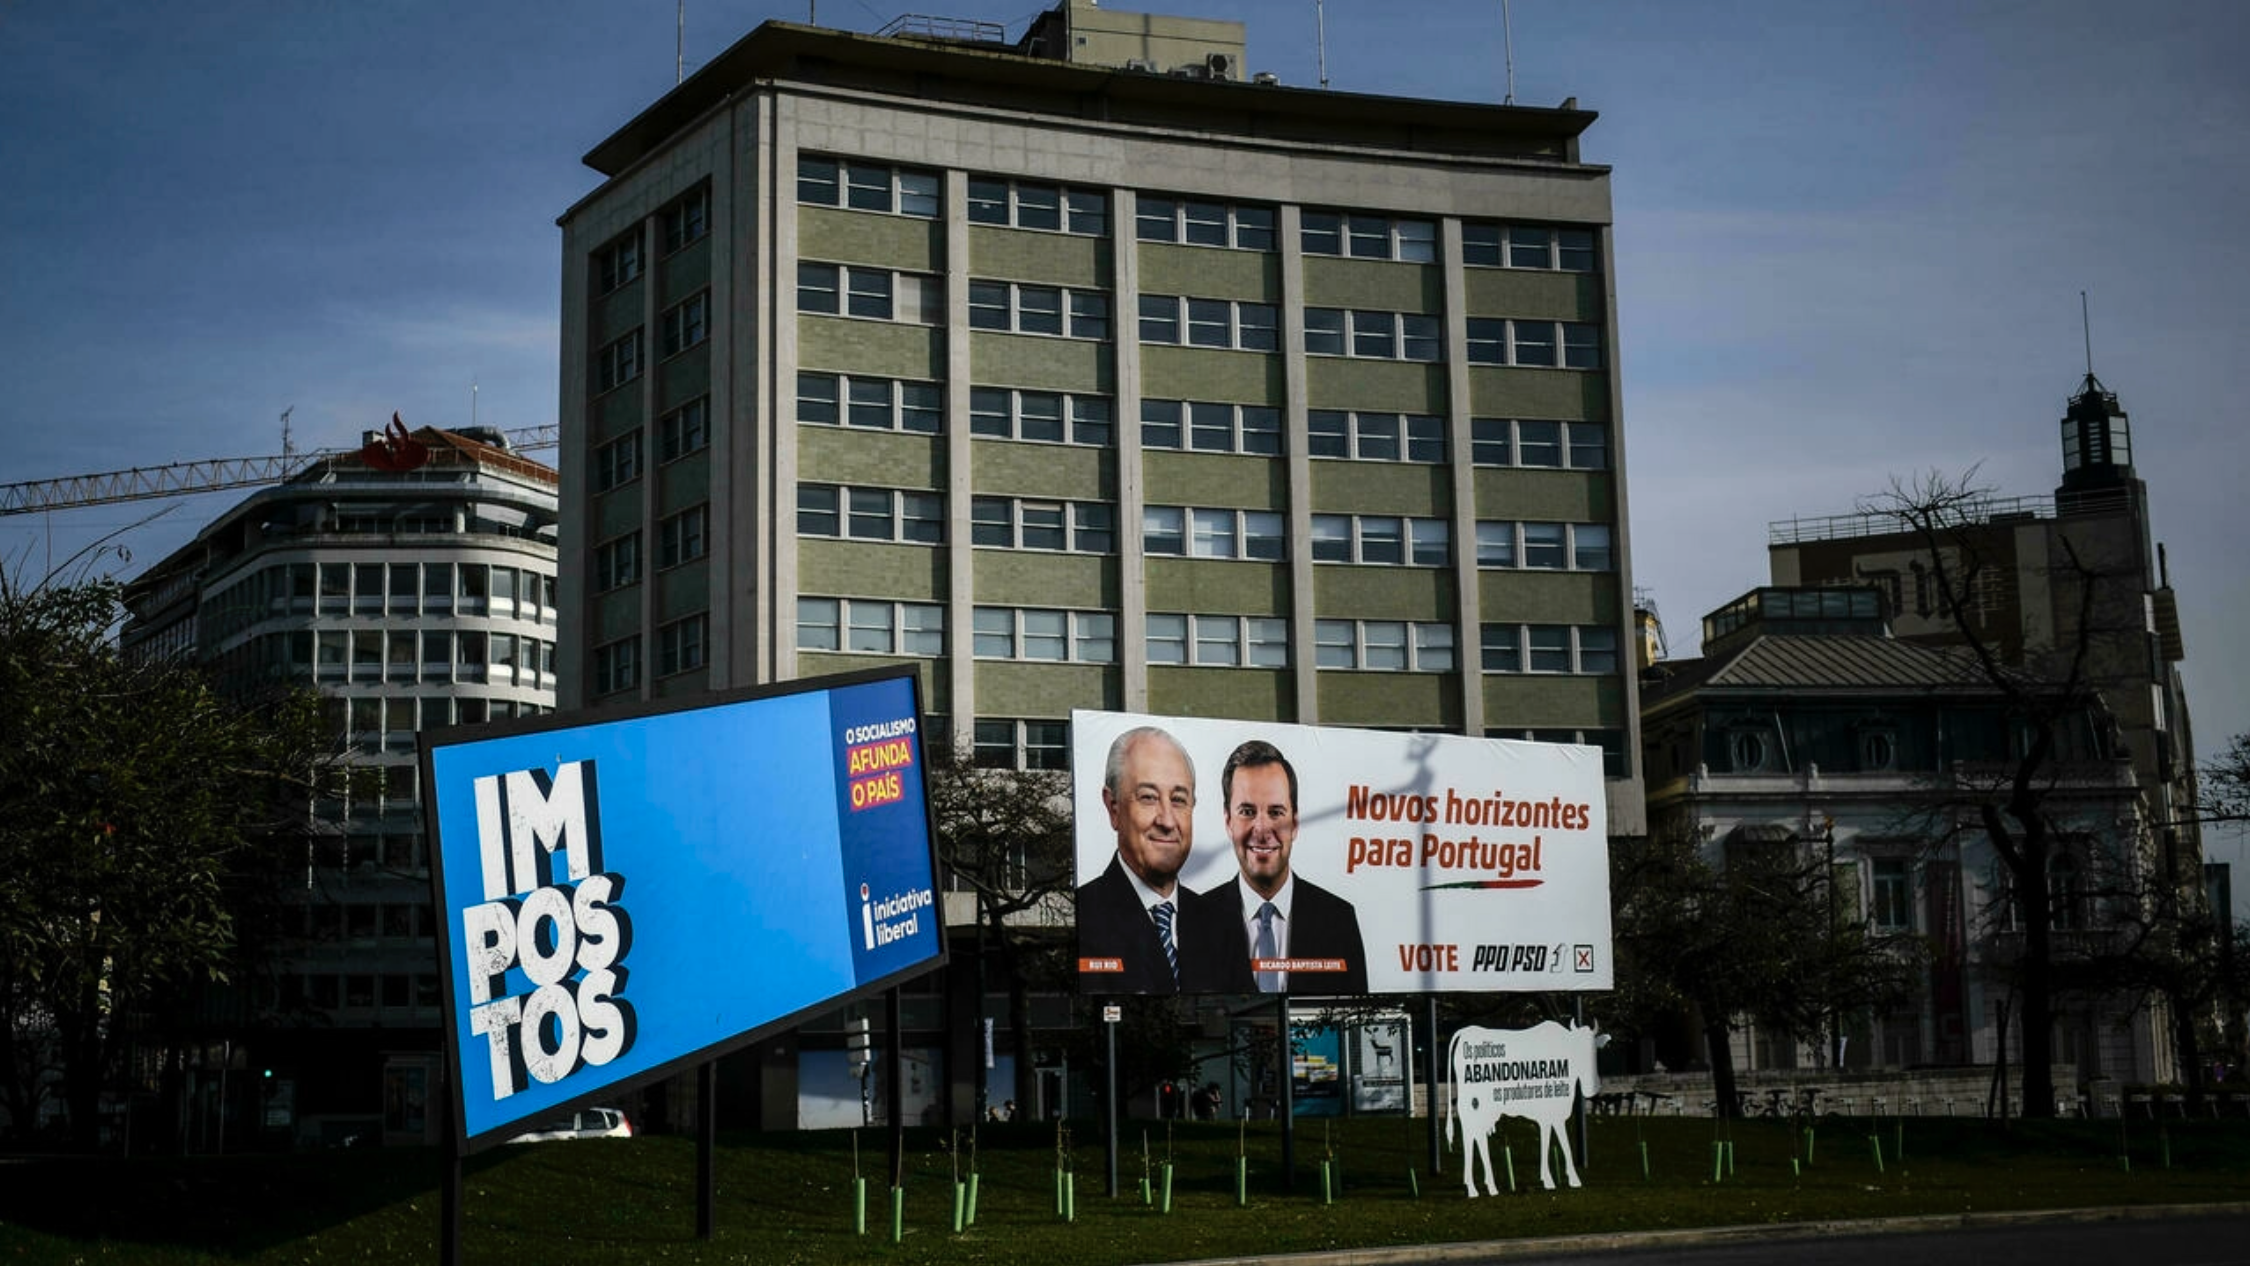 لافتة ضمن الحملات الانتخابية في لشبونة بتاريخ 16 كانون الثاني/يناير 2022